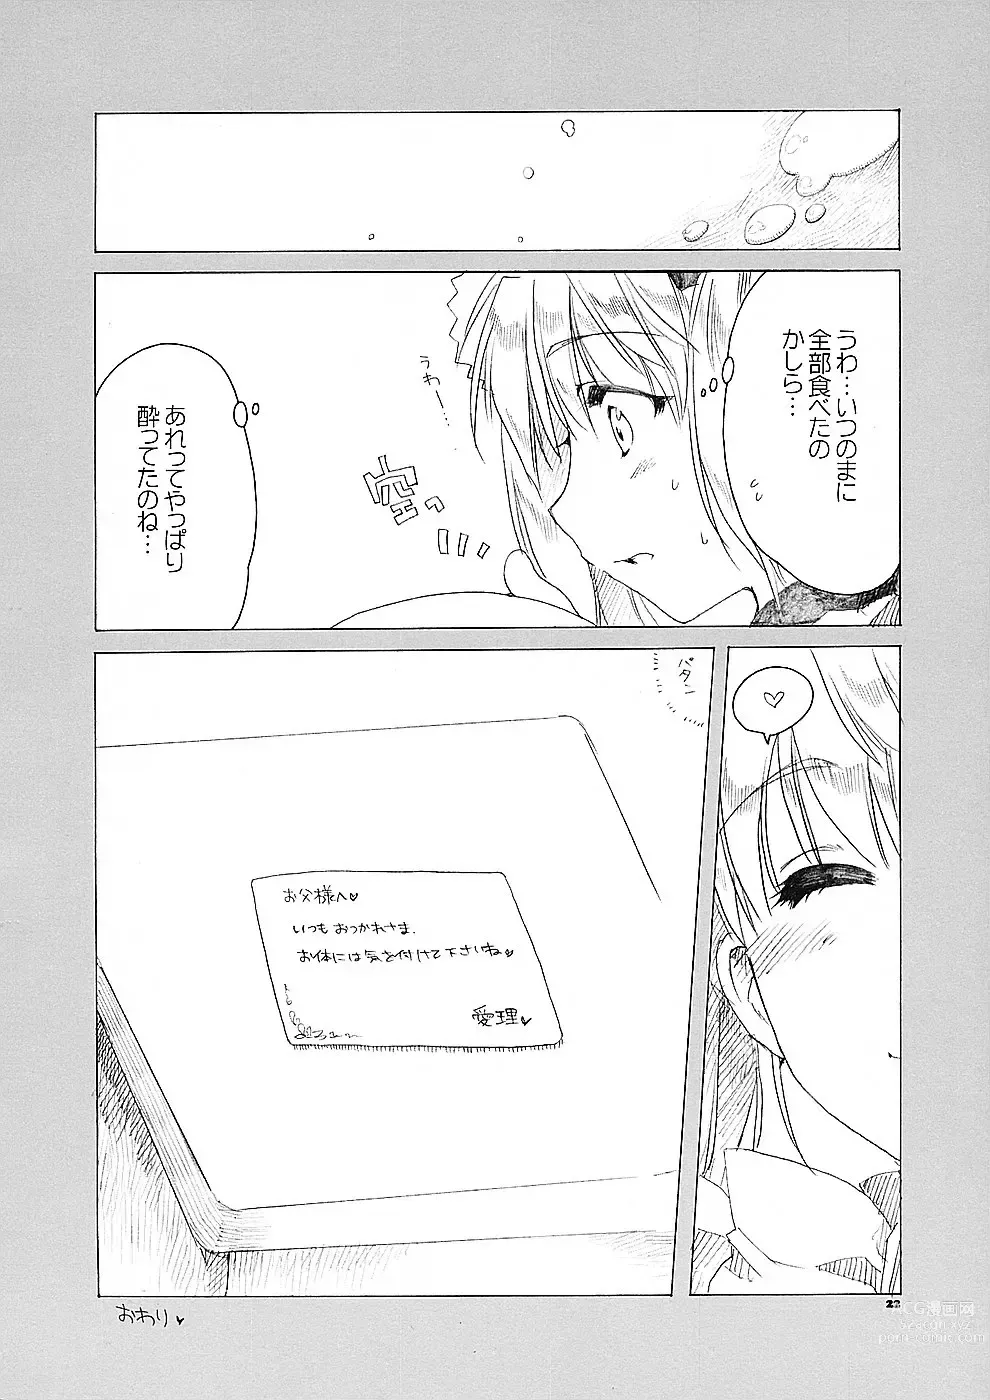 Page 21 of doujinshi Ai no Risei 2